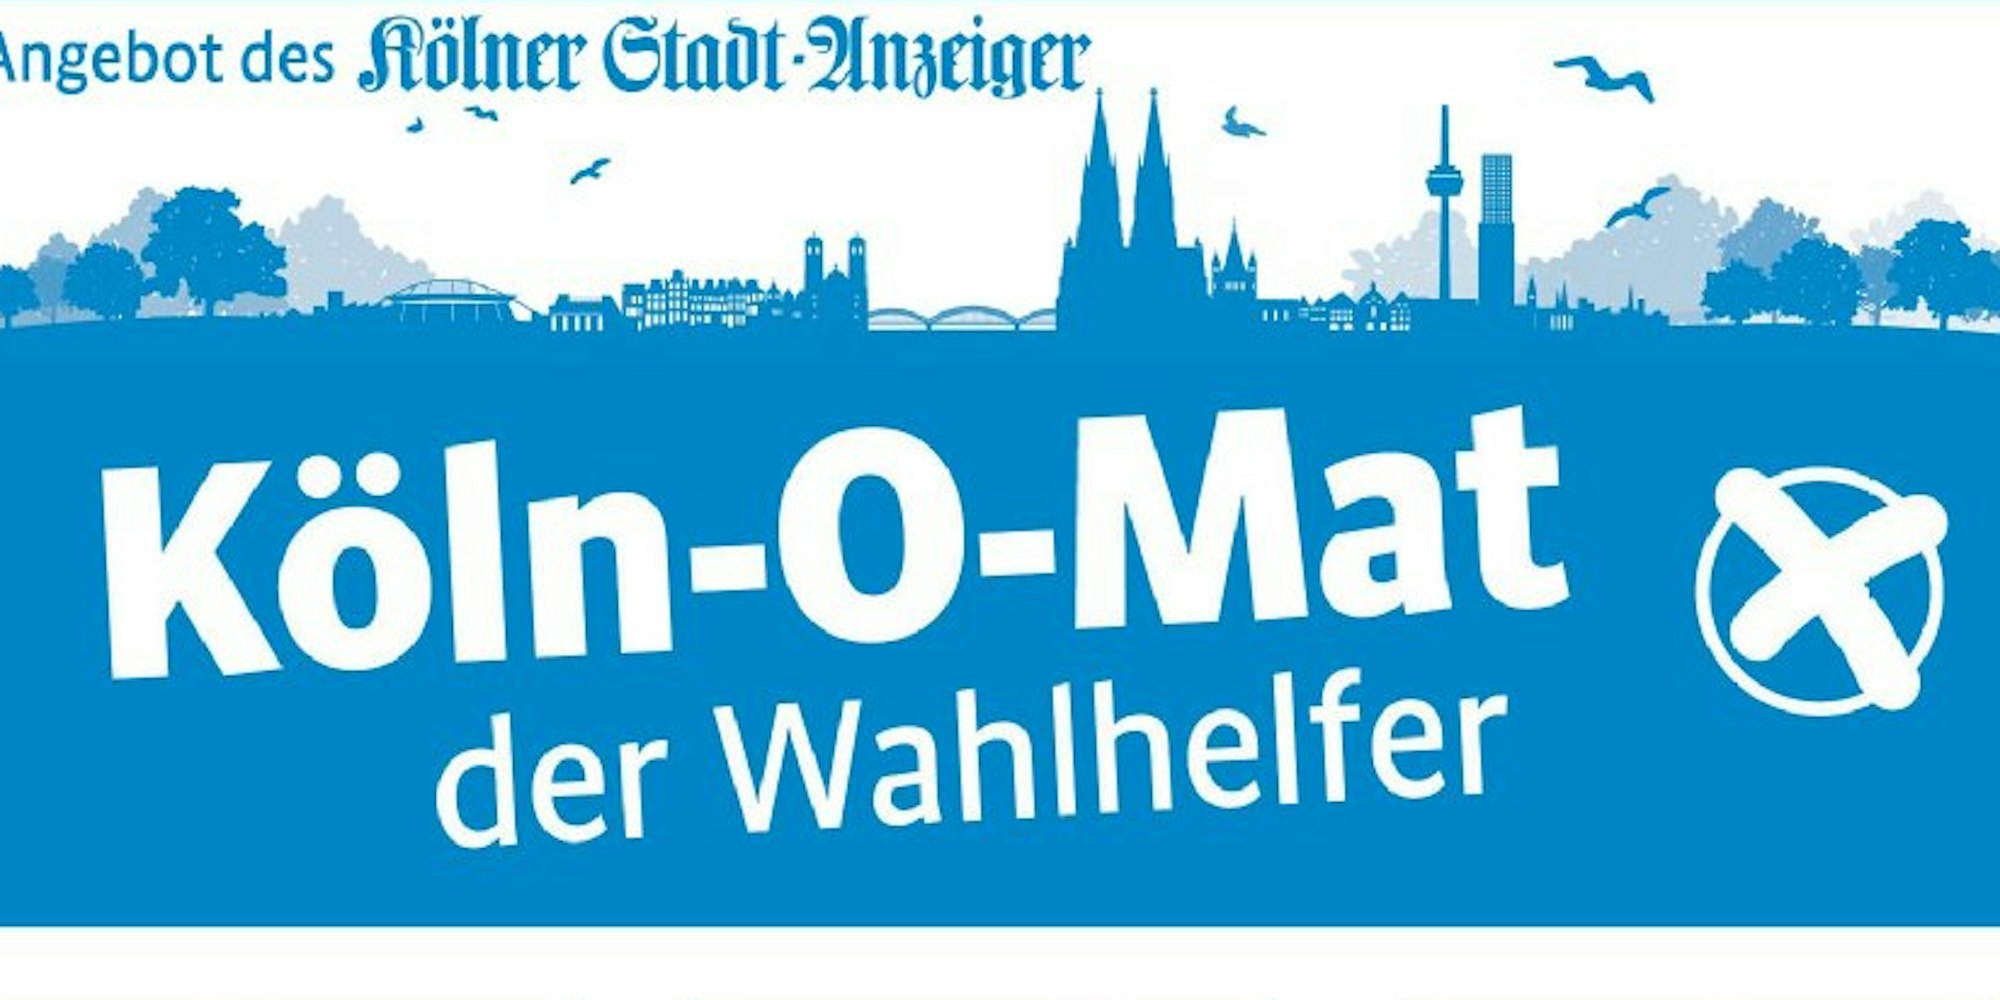 Köln-O-Mat heißt das digitale Werkzeug, das der „Kölner Stadt-Anzeiger“ nach Vorbild des Wahl-O-Mat der Bundeszentrale für politische Bildung erstmals für die Kommunalwahl am 25. Mai entwickelt hat.